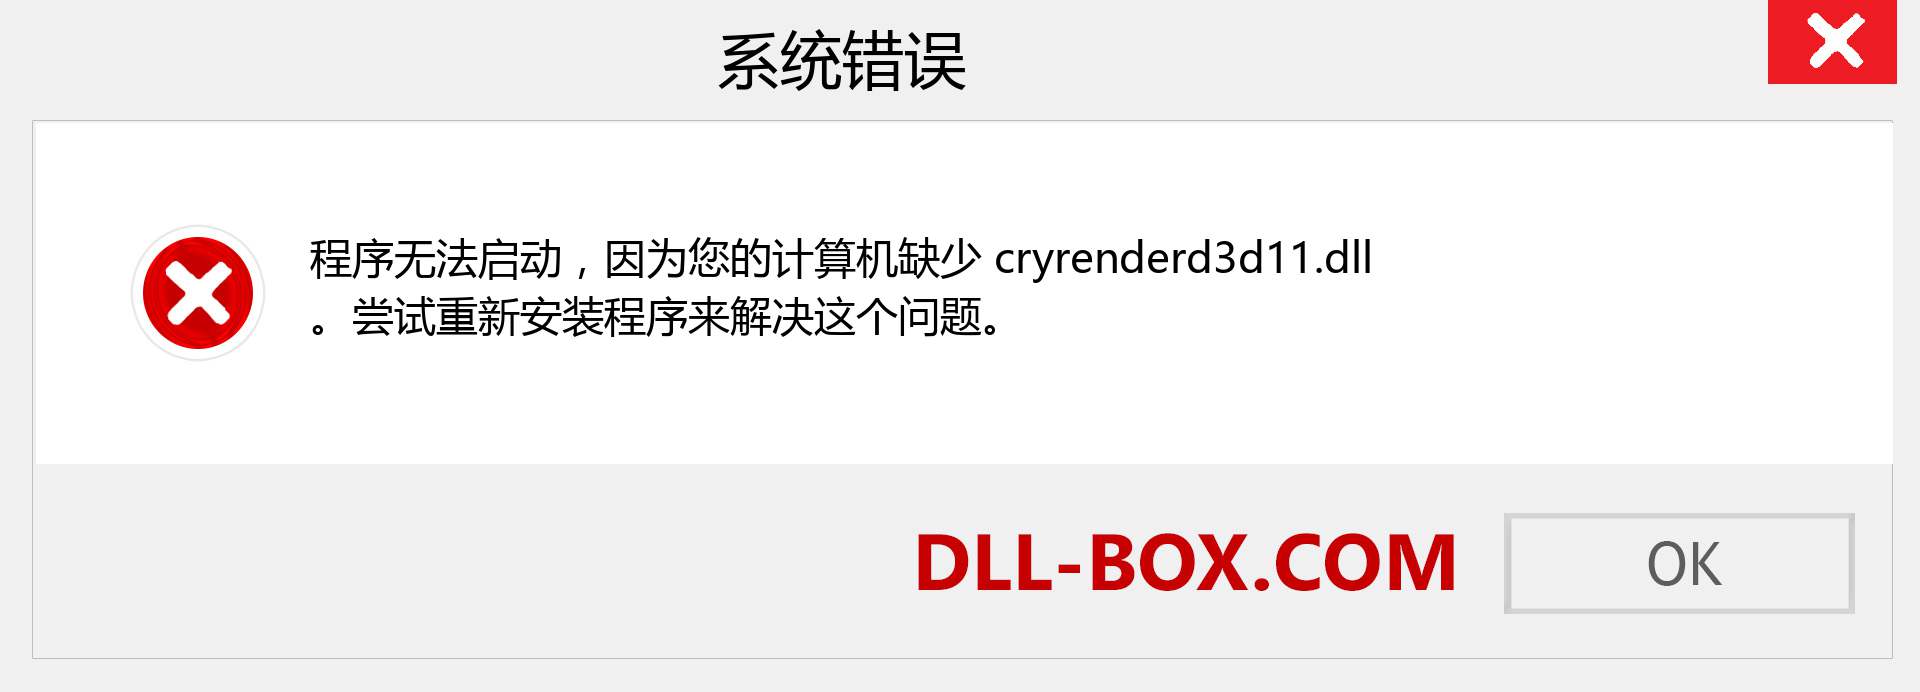 cryrenderd3d11.dll 文件丢失？。 适用于 Windows 7、8、10 的下载 - 修复 Windows、照片、图像上的 cryrenderd3d11 dll 丢失错误